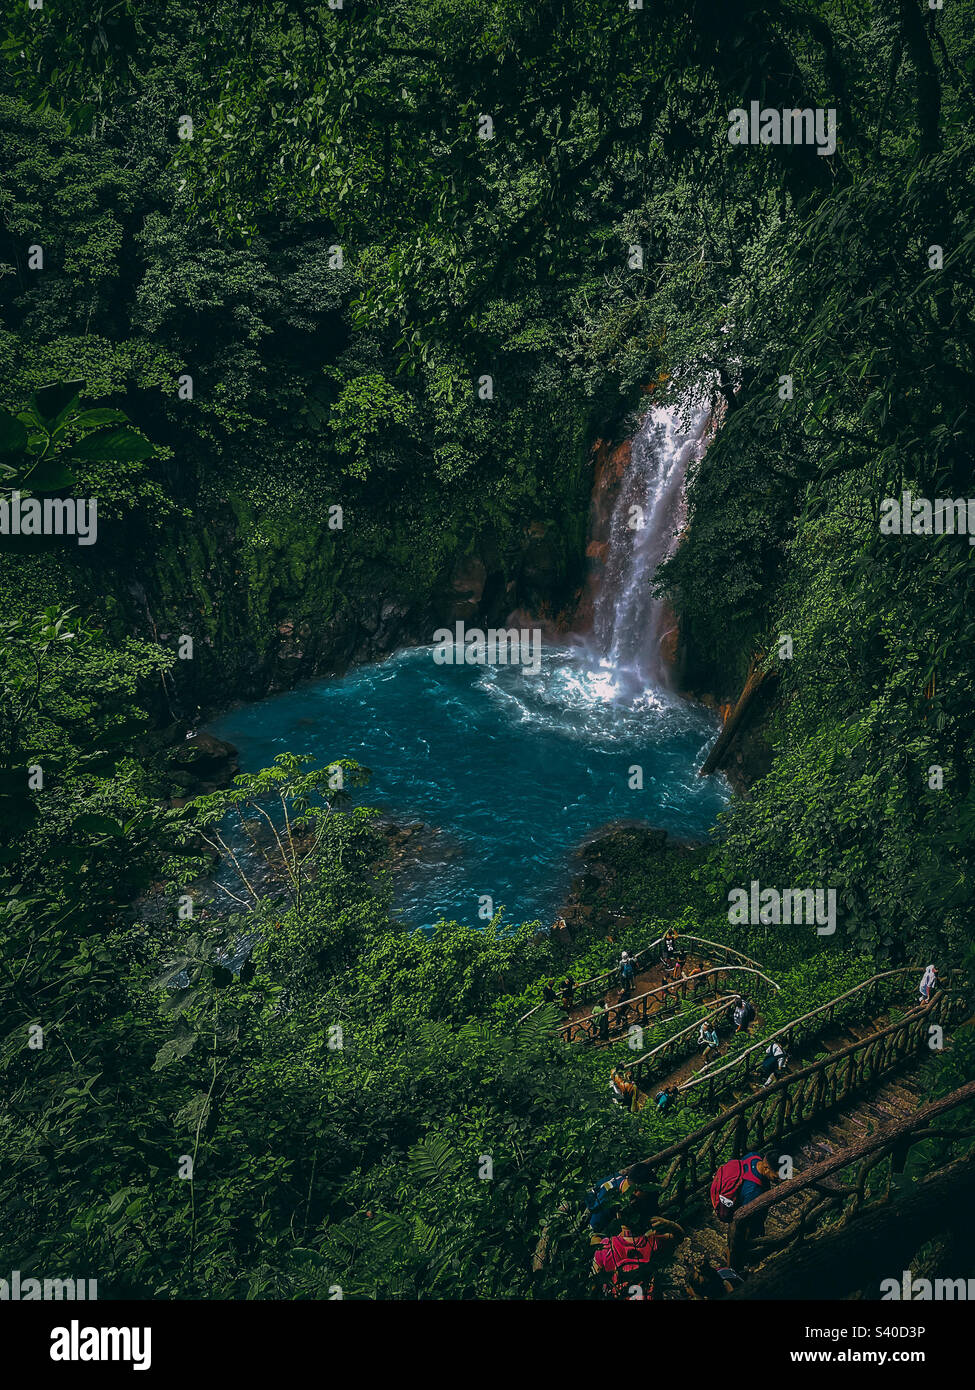 Costa Rica waterfall Stock Photo